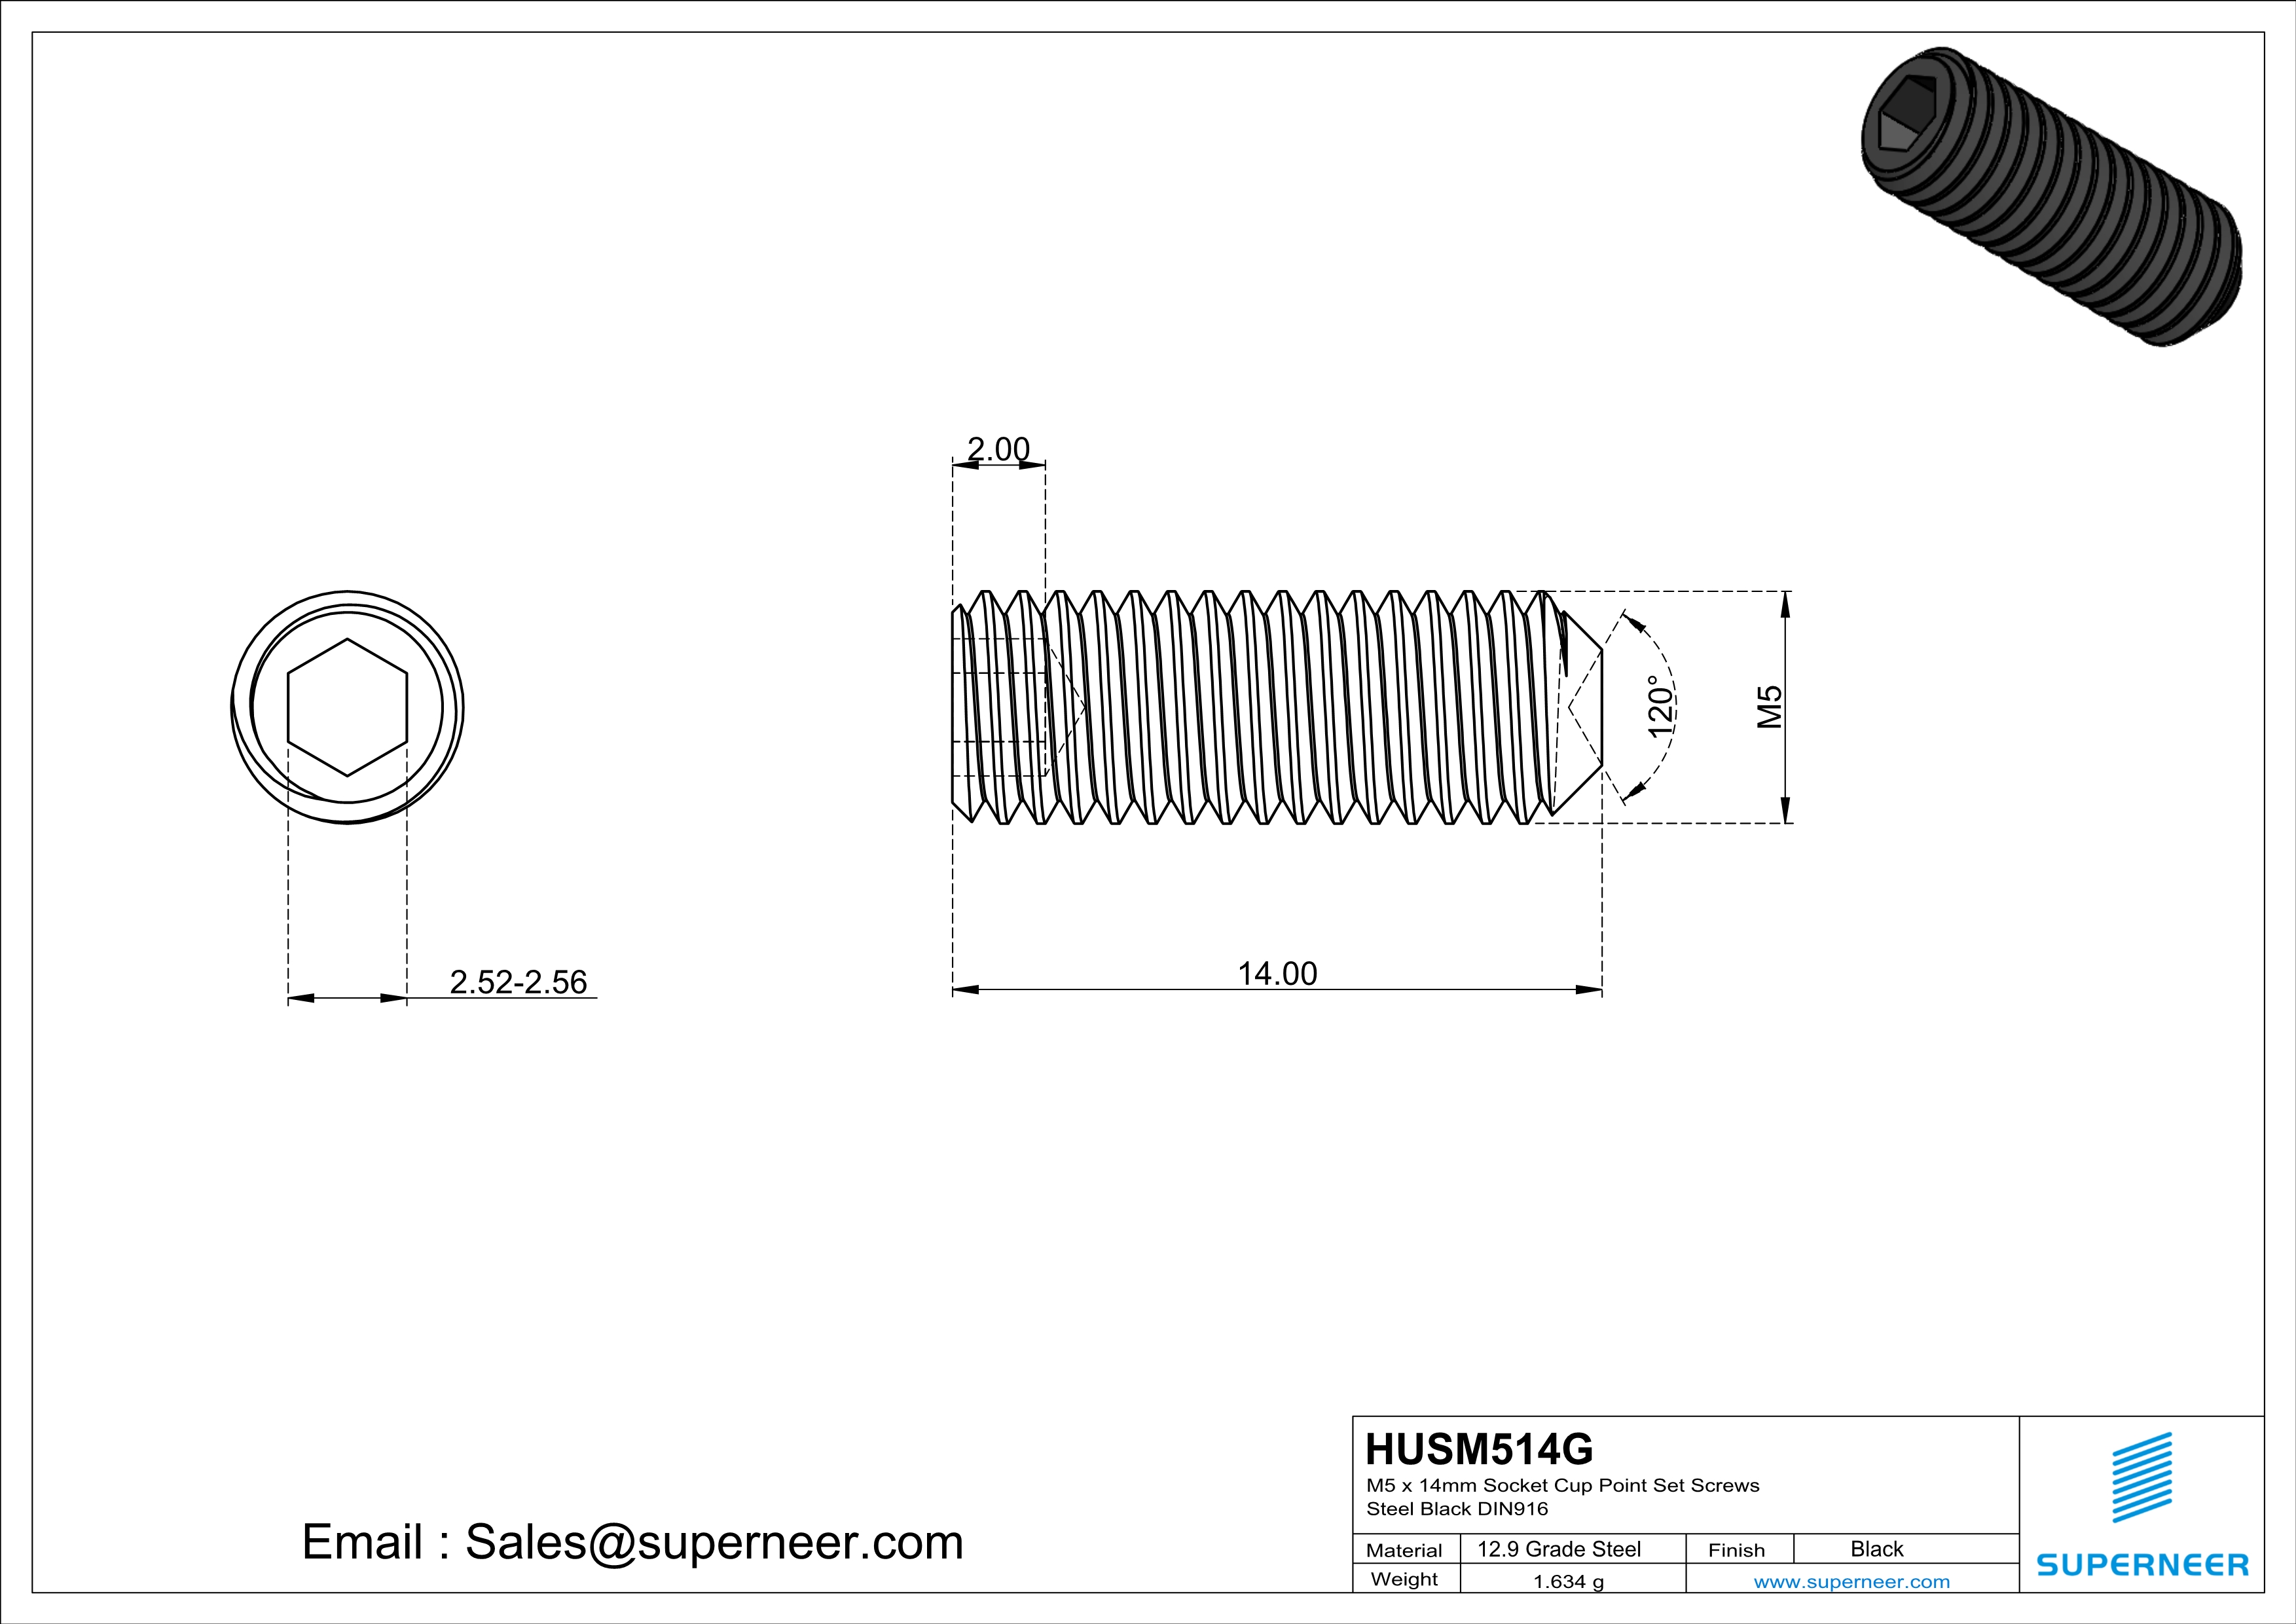 M5 x 14mm Socket Cup Point Set Screws 12.9 Carbon Steel Black DIN916